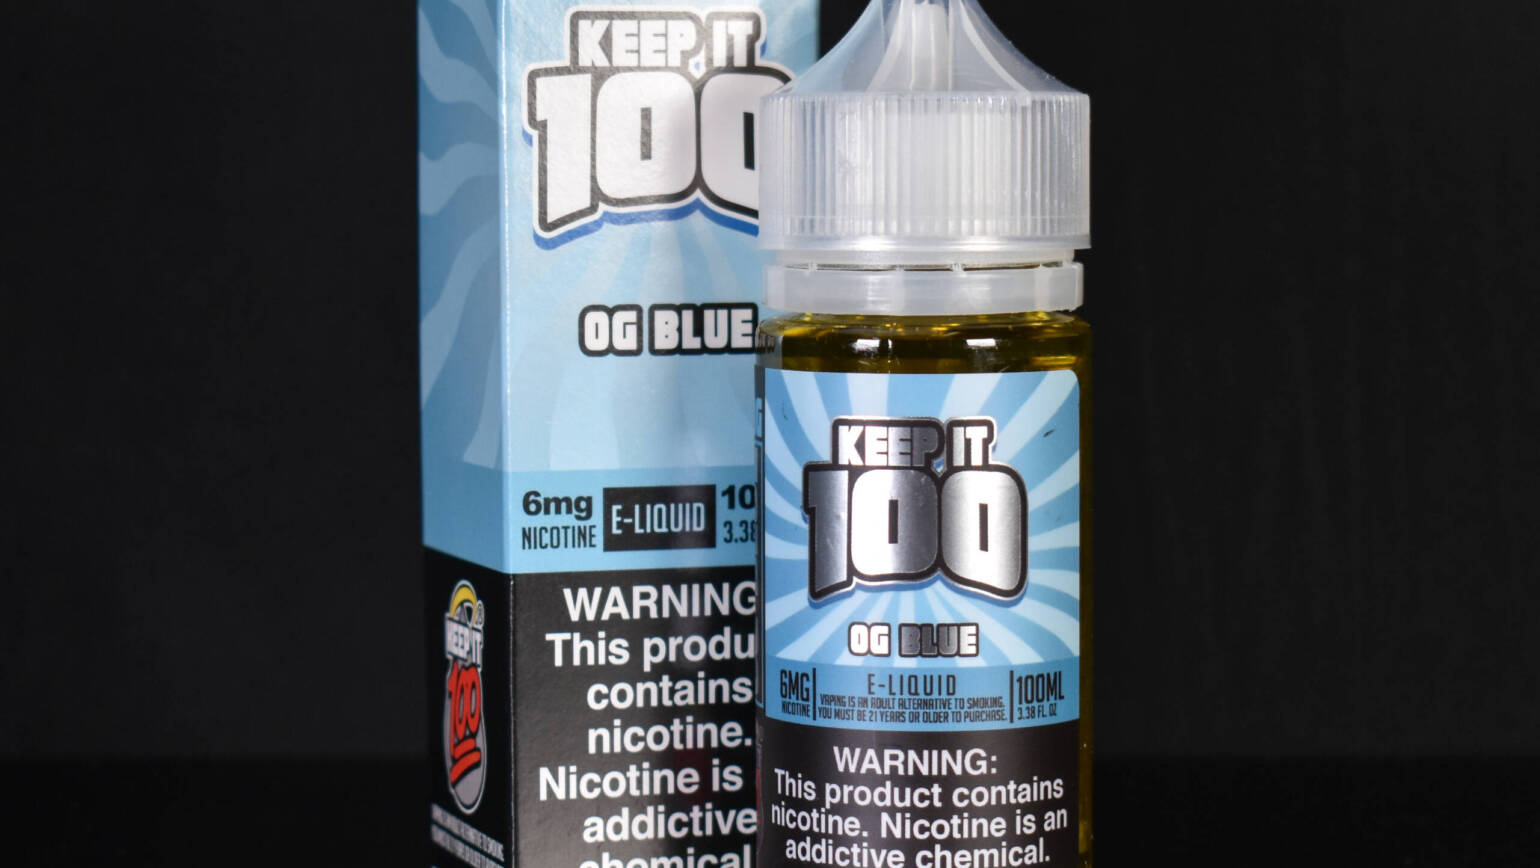 Keep It 100 – OG Blue